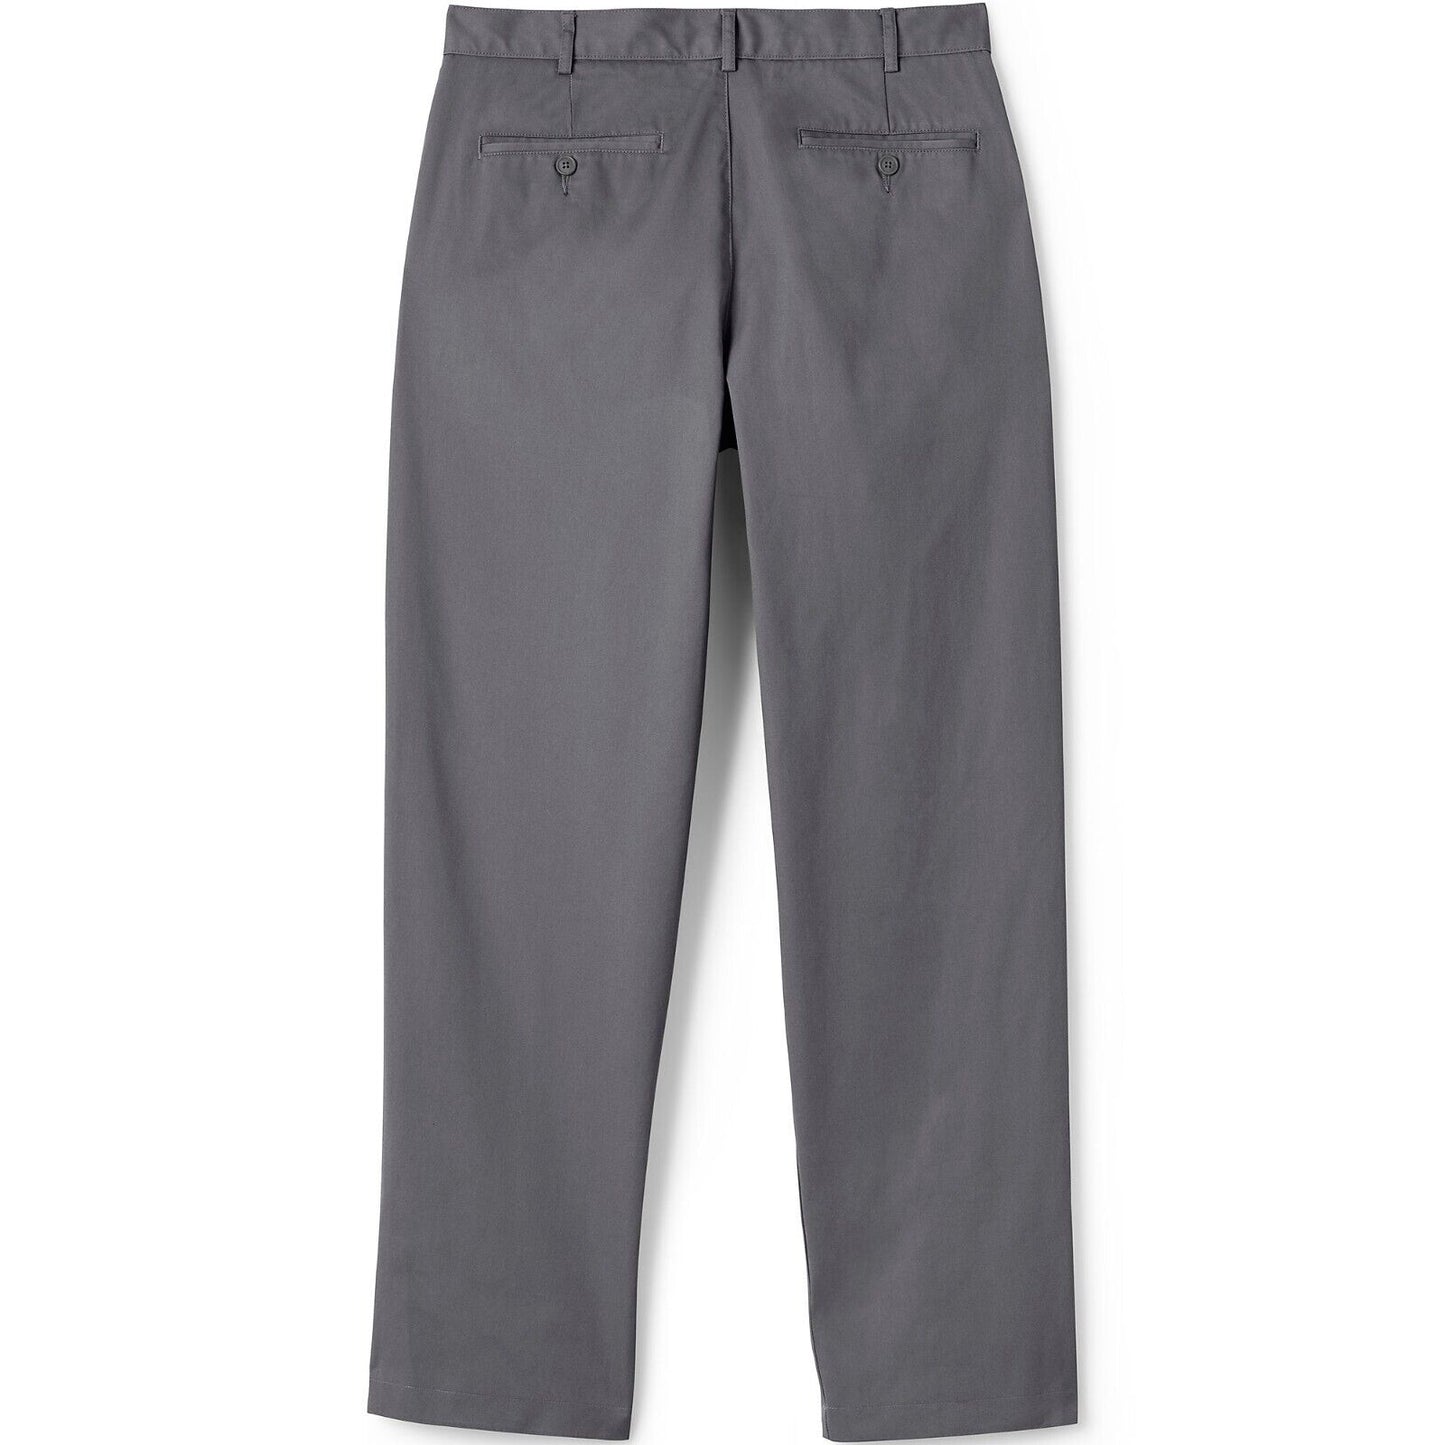 Men's Blend Plain Front Chino Pants Size 30